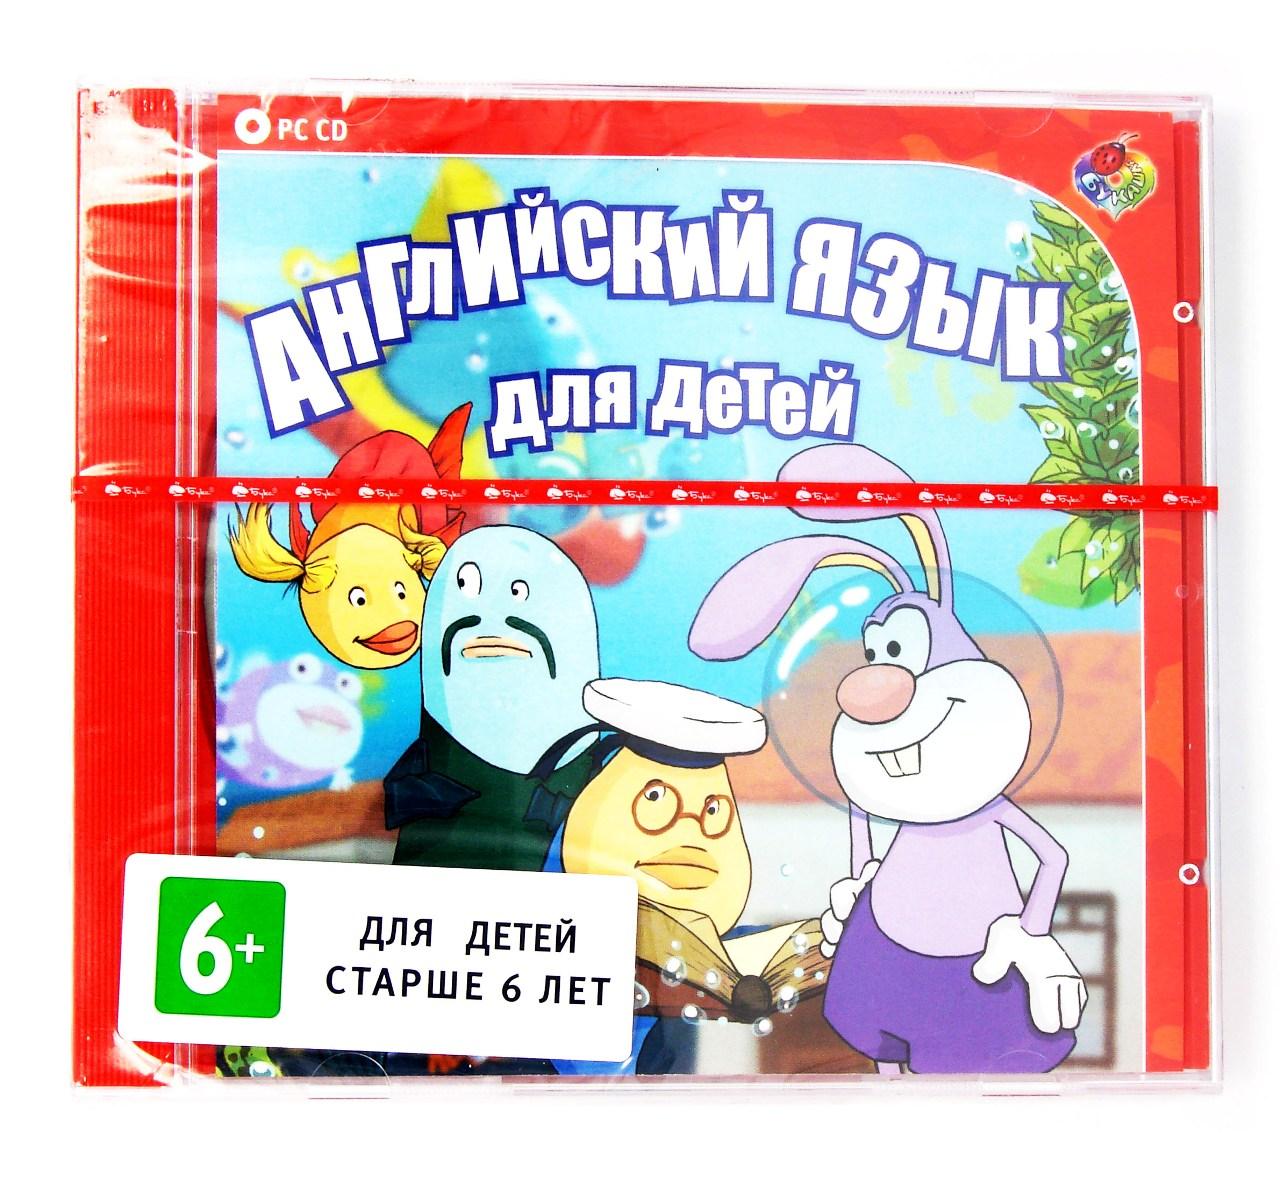 Компьютерный компакт-диск Английский язык для детей (ПК), фирма "Бука", 1CD